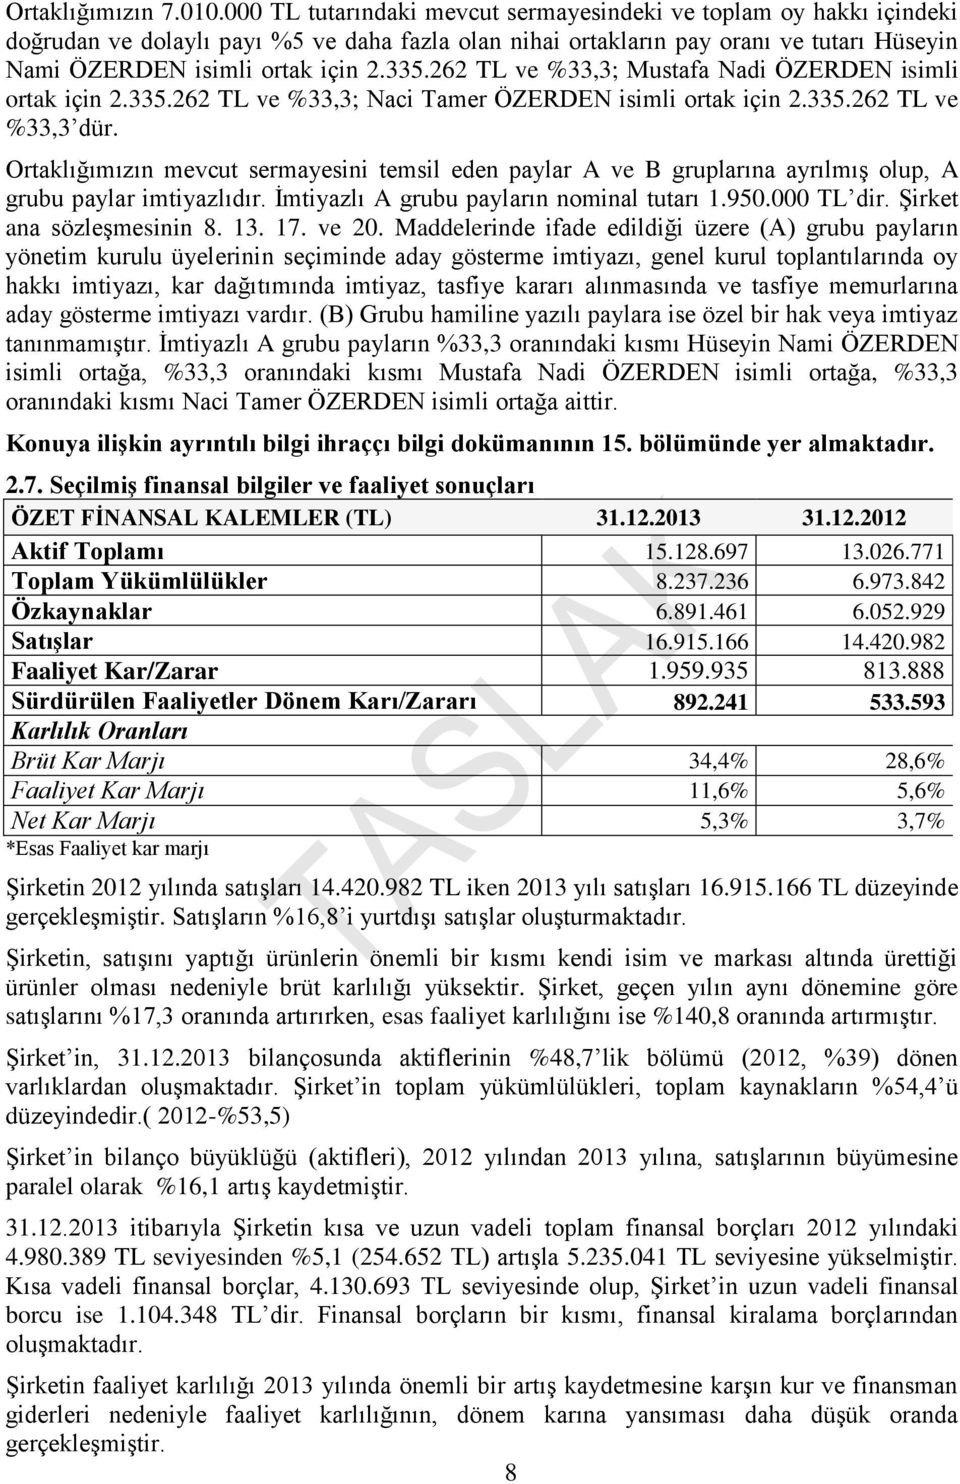 262 TL ve %33,3; Mustafa Nadi ÖZERDEN isimli ortak için 2.335.262 TL ve %33,3; Naci Tamer ÖZERDEN isimli ortak için 2.335.262 TL ve %33,3 dür.